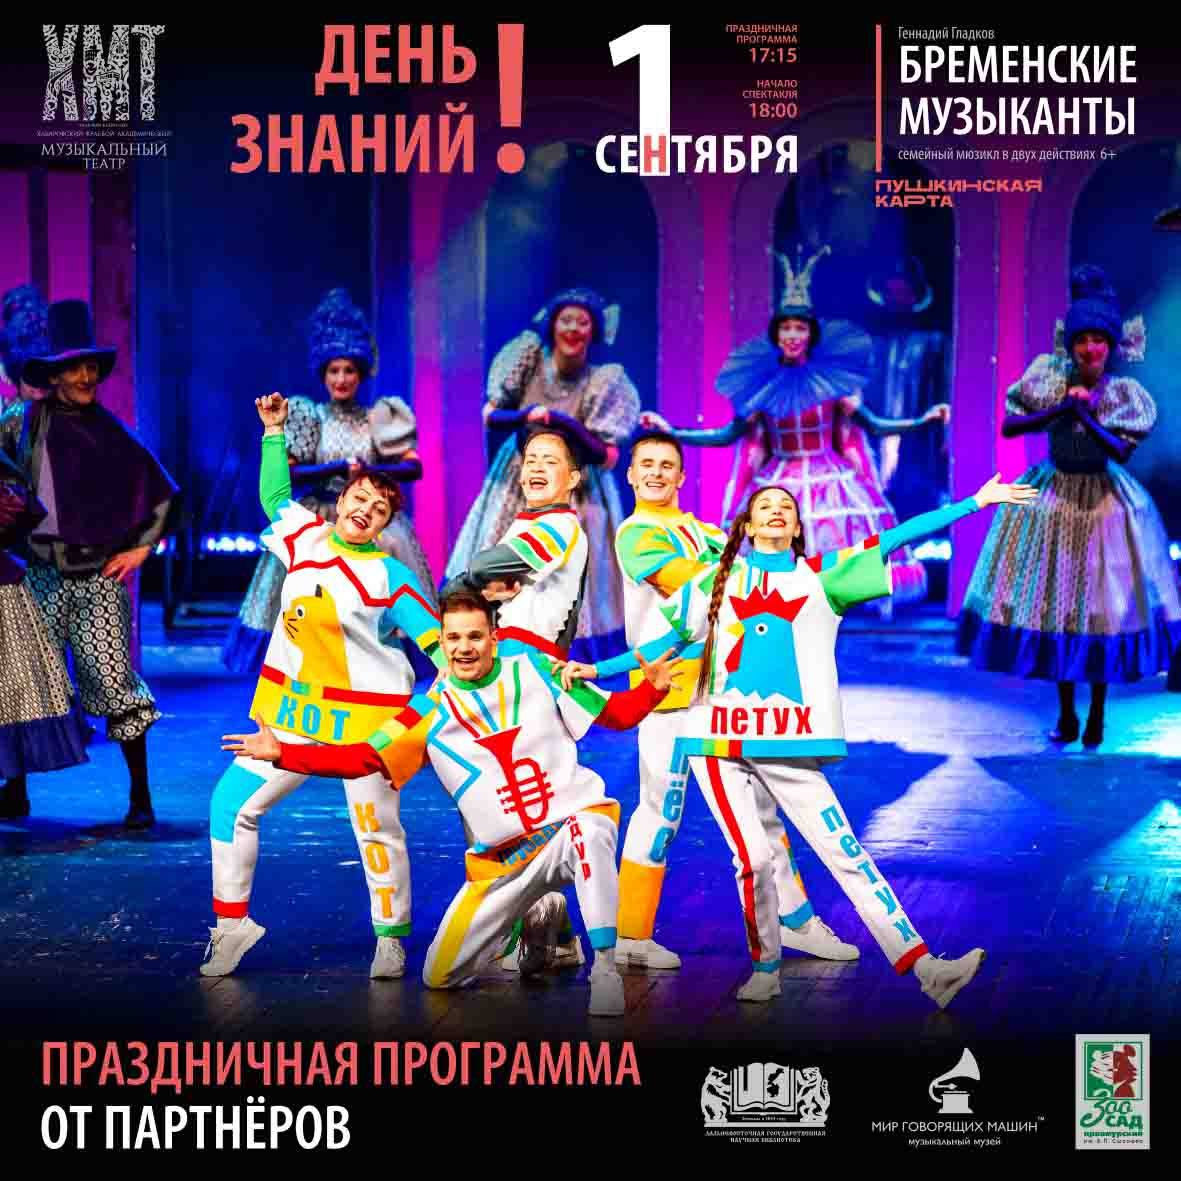 Совместное мероприятие Хабаровского Музыкального театра и зоосада 